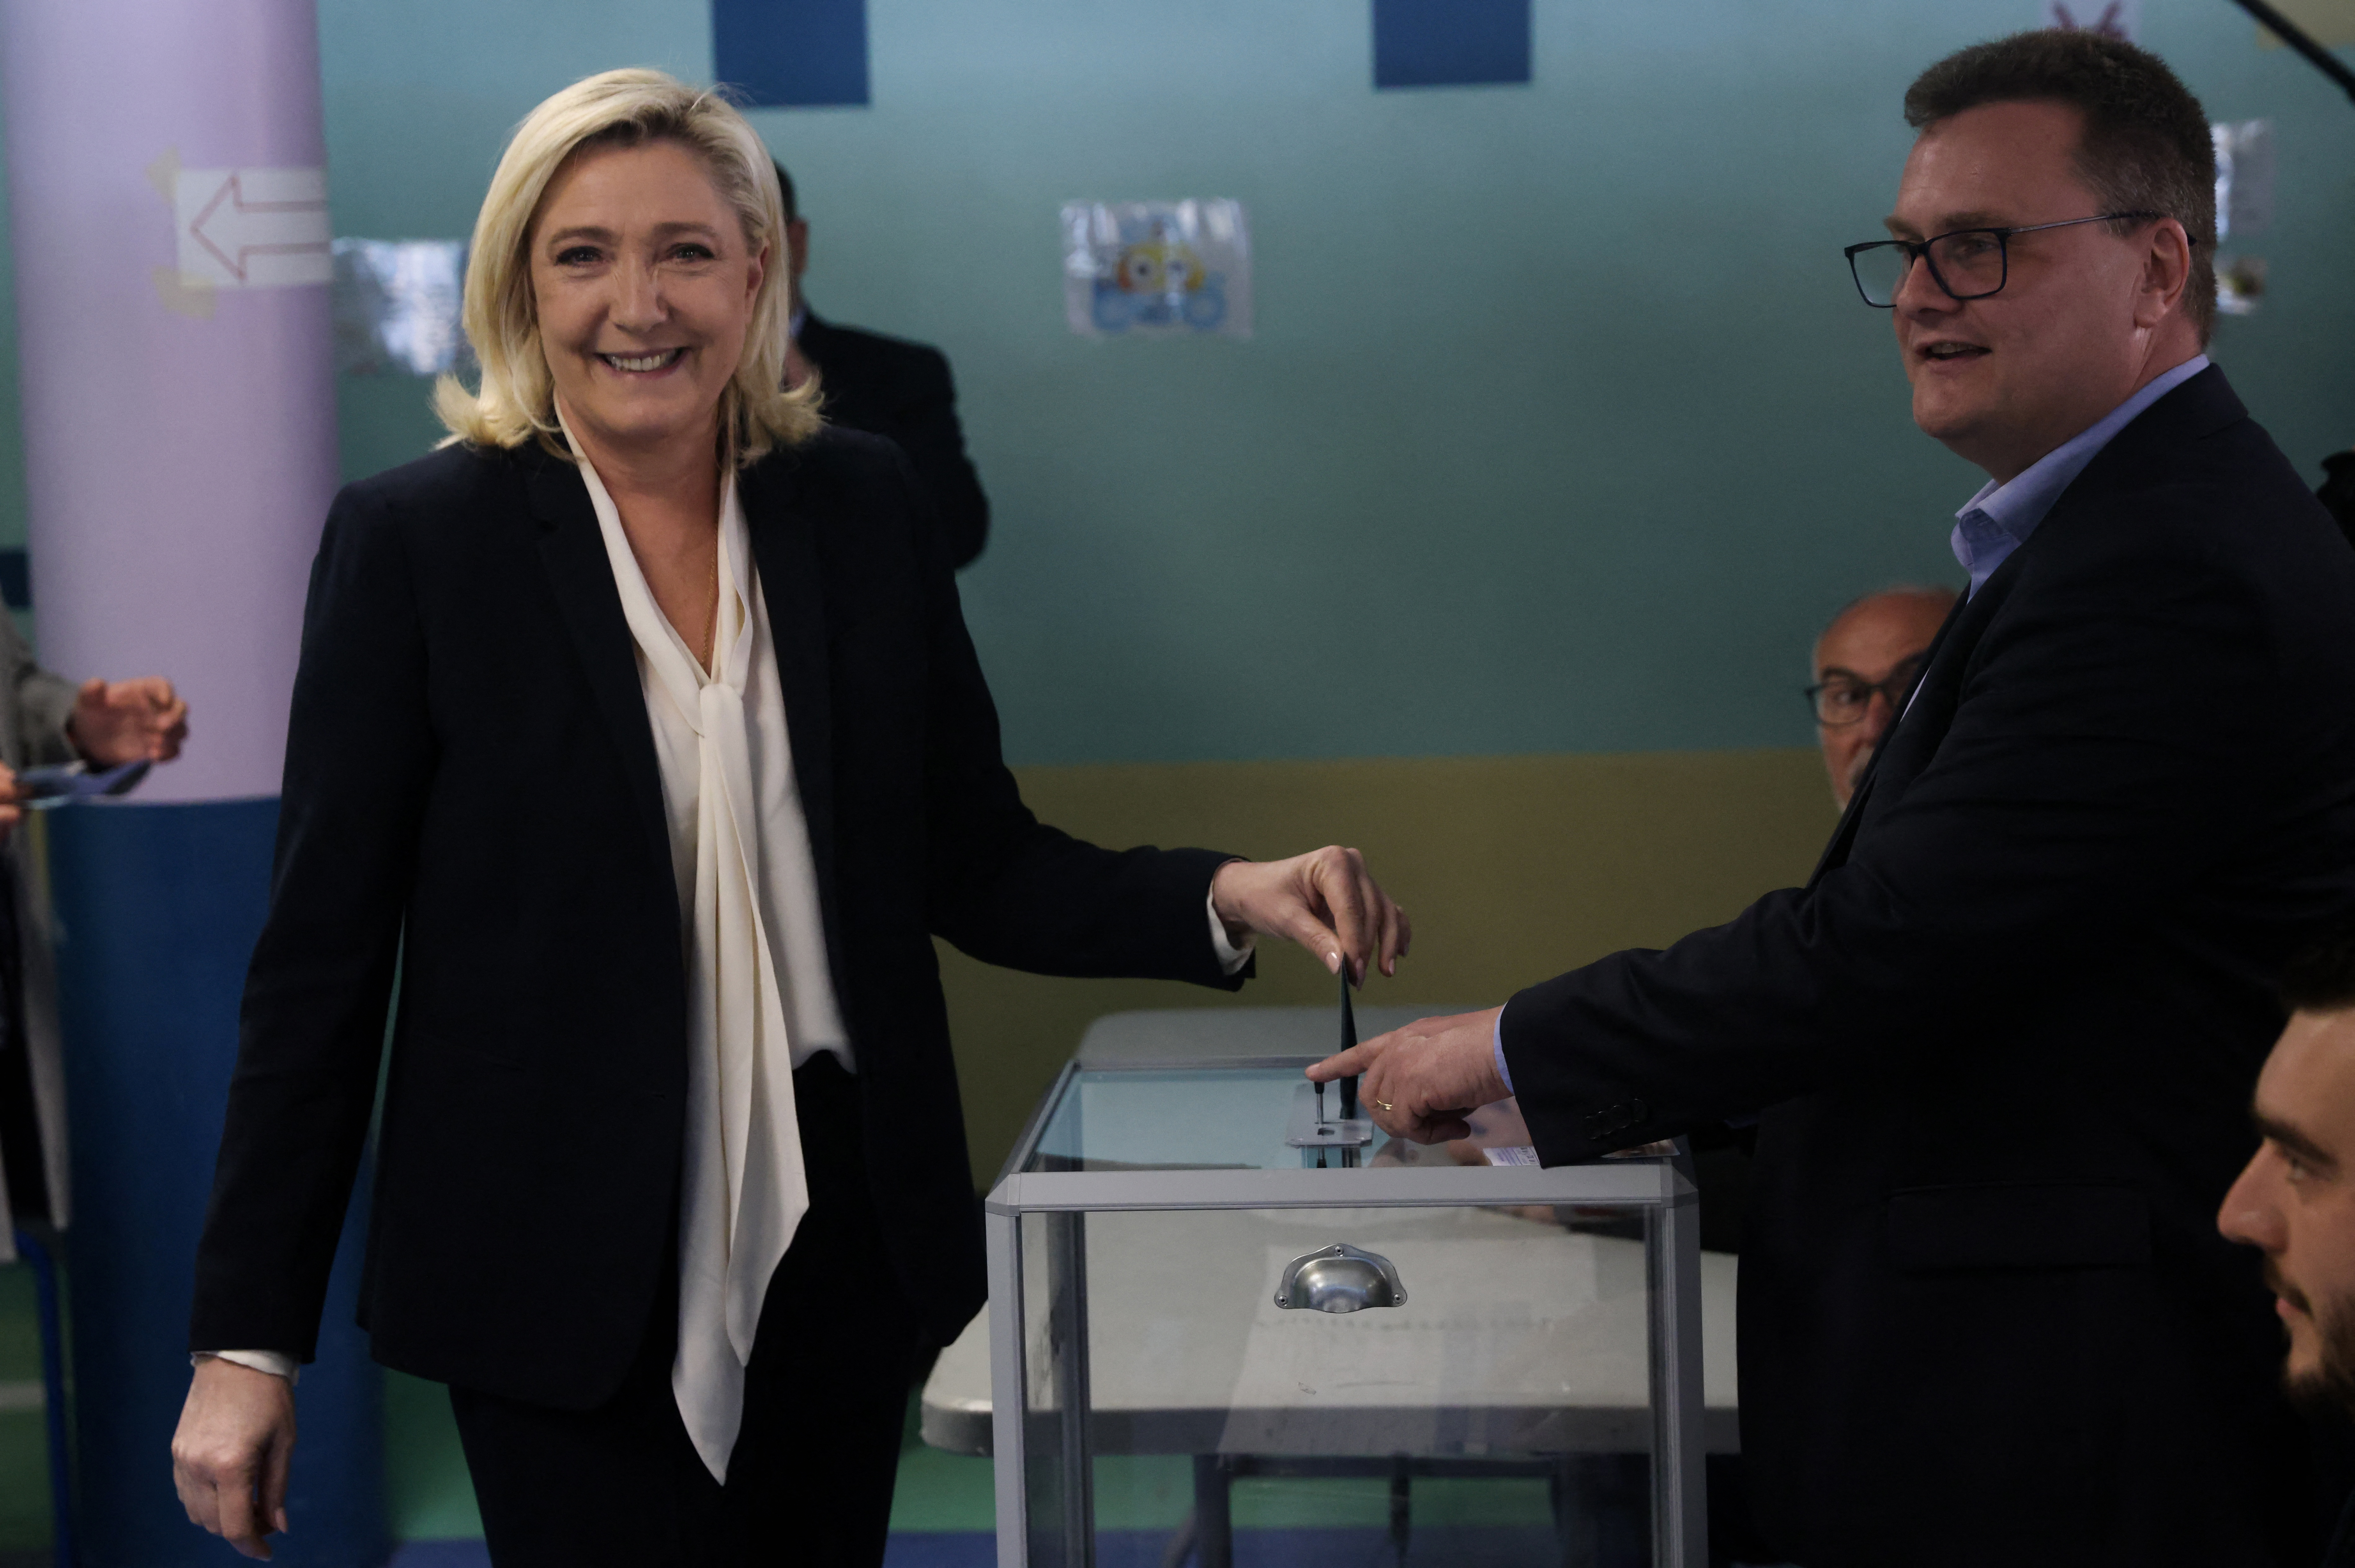 Marine Le Pen, candidata del partido francés de extrema derecha Agrupación Nacional (Rassemblement National) para las elecciones presidenciales francesas de 2022, deposita su voto en la segunda vuelta de las elecciones presidenciales francesas de 2022 en un colegio electoral en Henin-Beaumont, Francia, el 24 de abril de 2022. REUTERS/Yves Herman